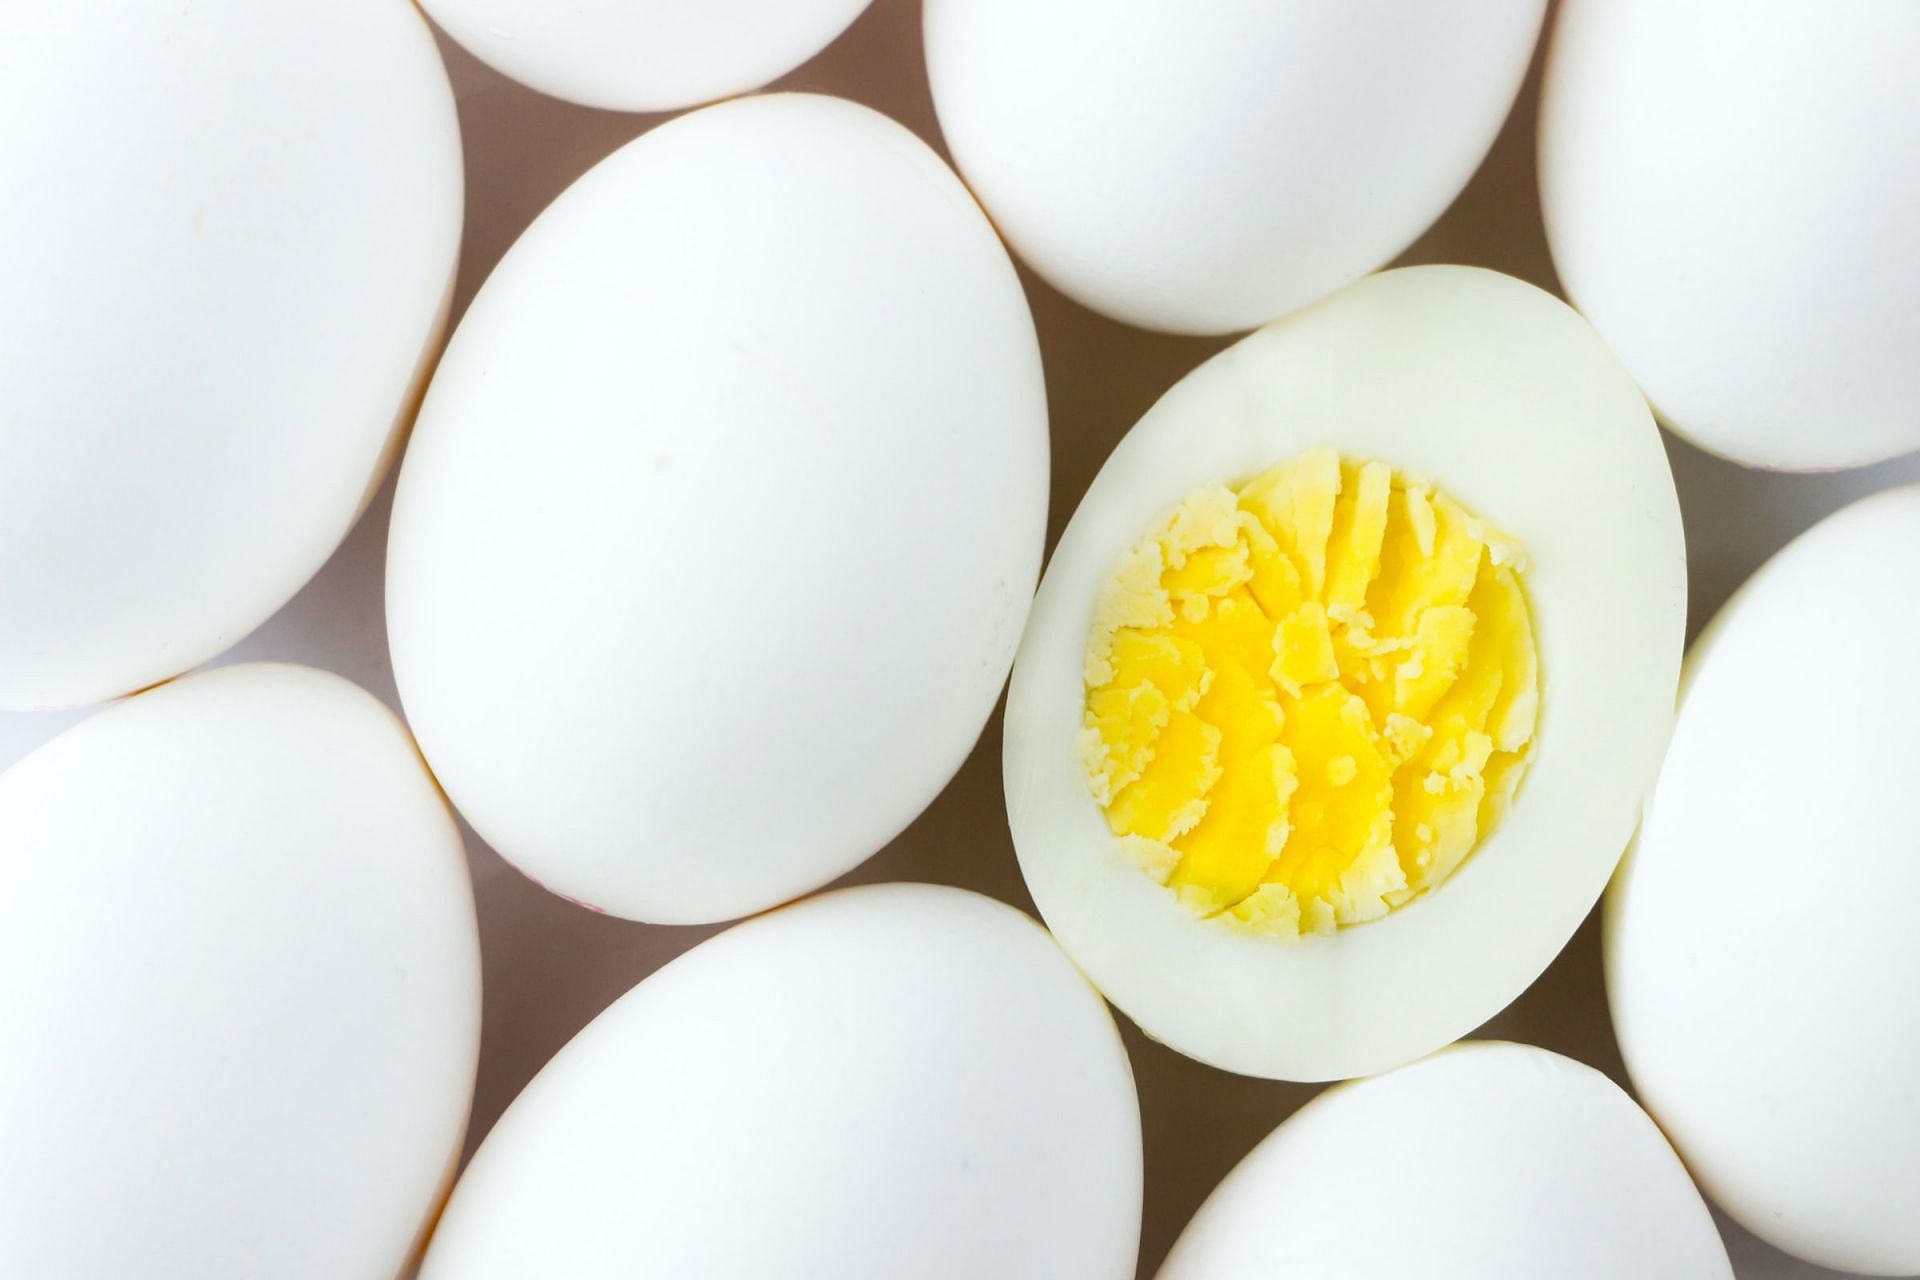 Eating eggs (Image via Unsplash/Mustafa Bashari)